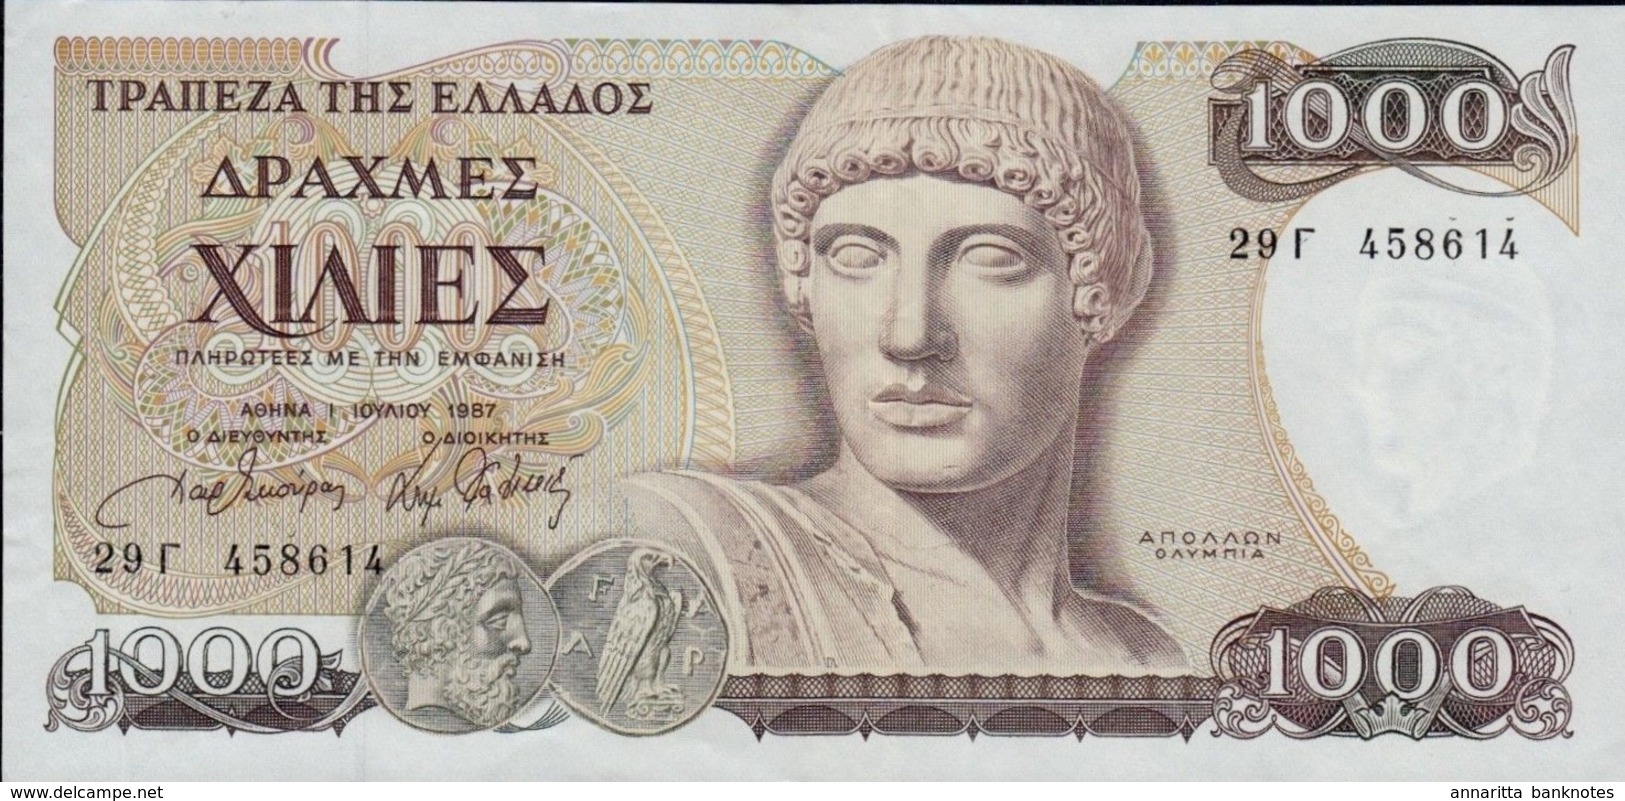 GREECE 1000 ΔΡΑΧΜΕΣ (DRACHMAS) 1987 P-202 XF  [GR202] - Greece